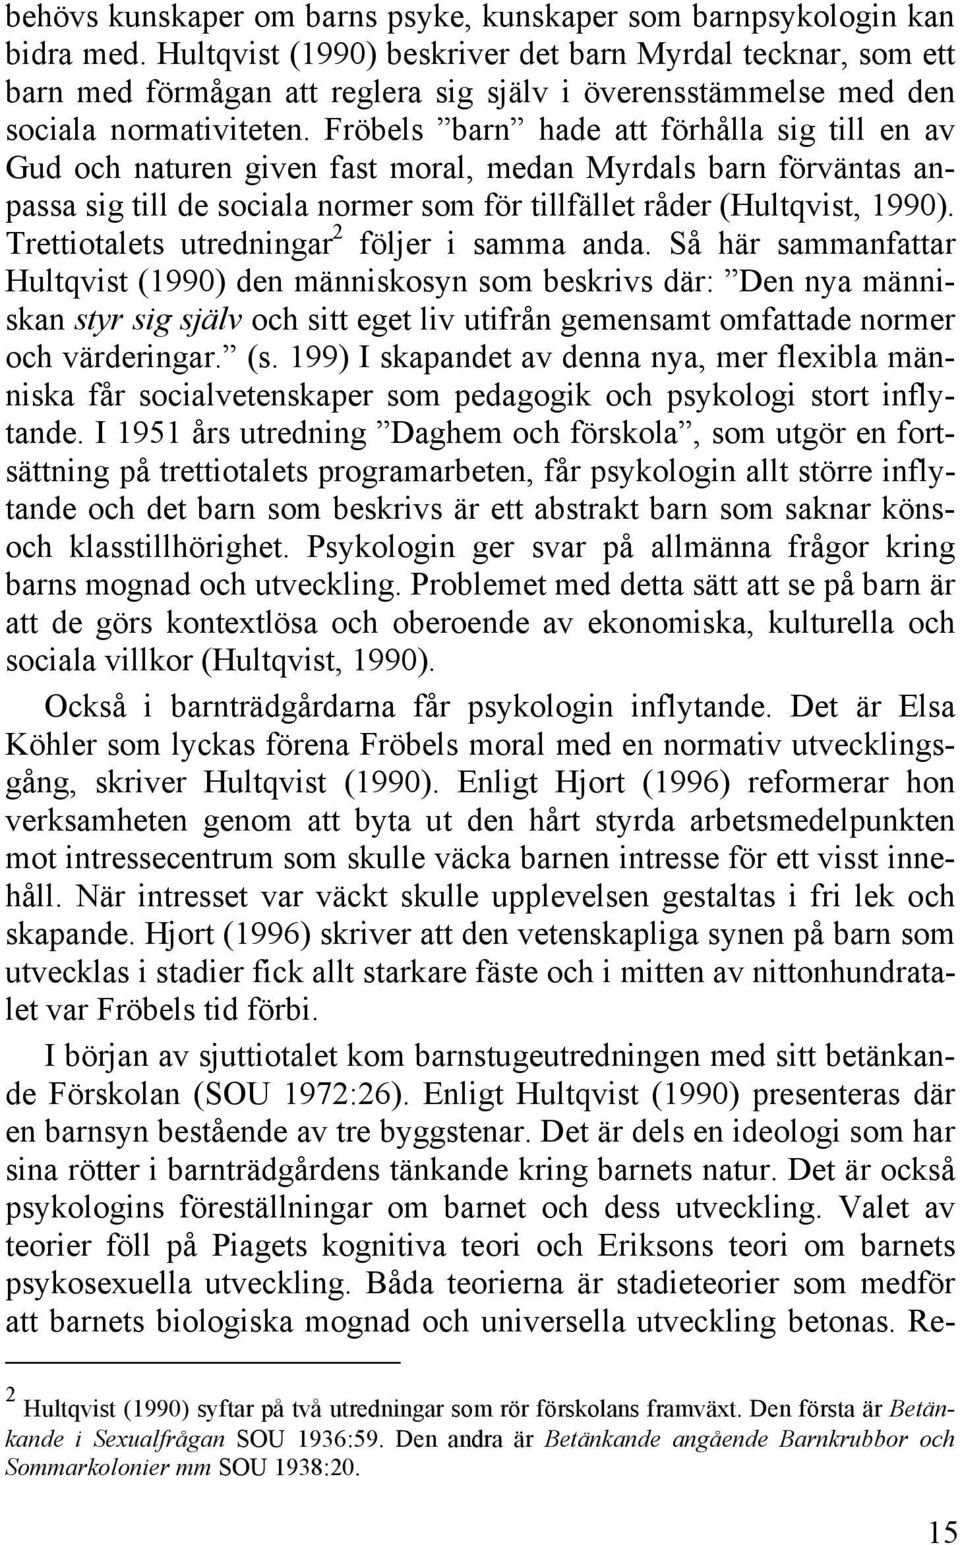 Fröbels barn hade att förhålla sig till en av Gud och naturen given fast moral, medan Myrdals barn förväntas anpassa sig till de sociala normer som för tillfället råder (Hultqvist, 1990).